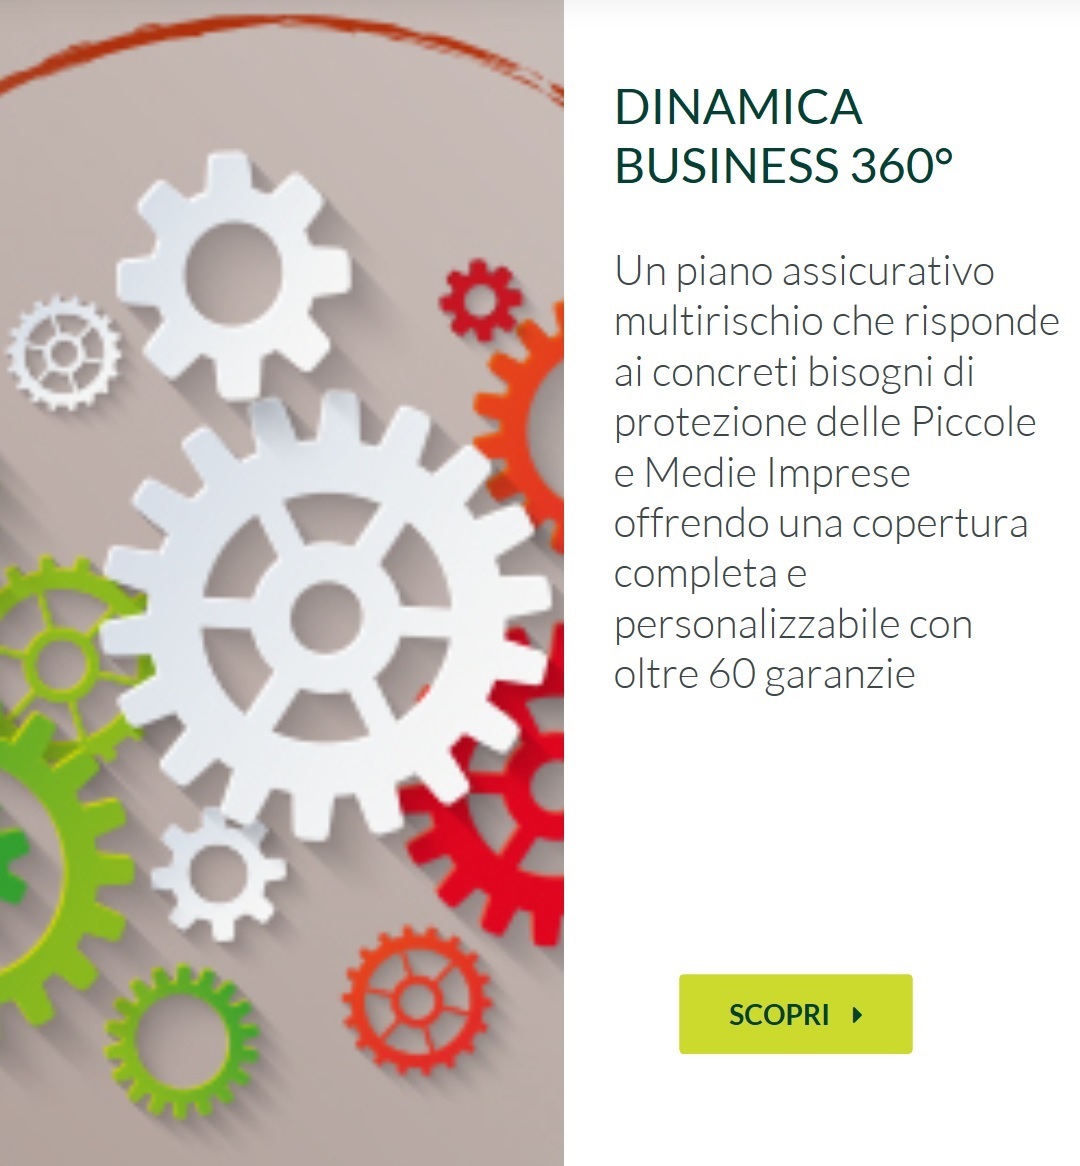 Groupama Dinamica Business 360